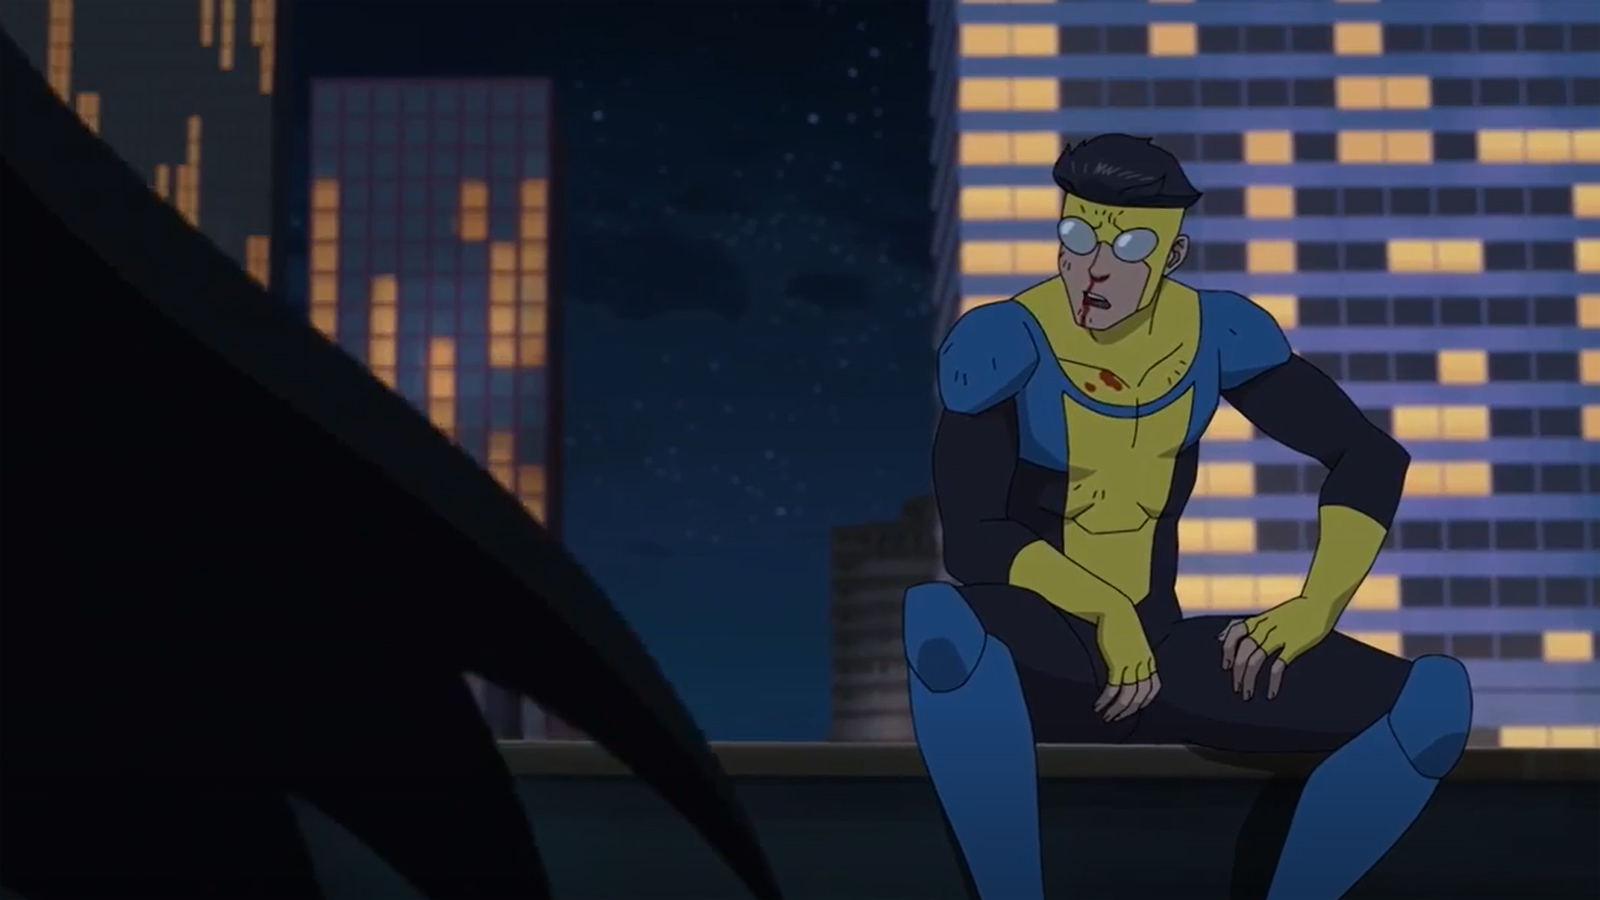 Mark Grayson talks to someone who resembles Batman in Invincible season 2